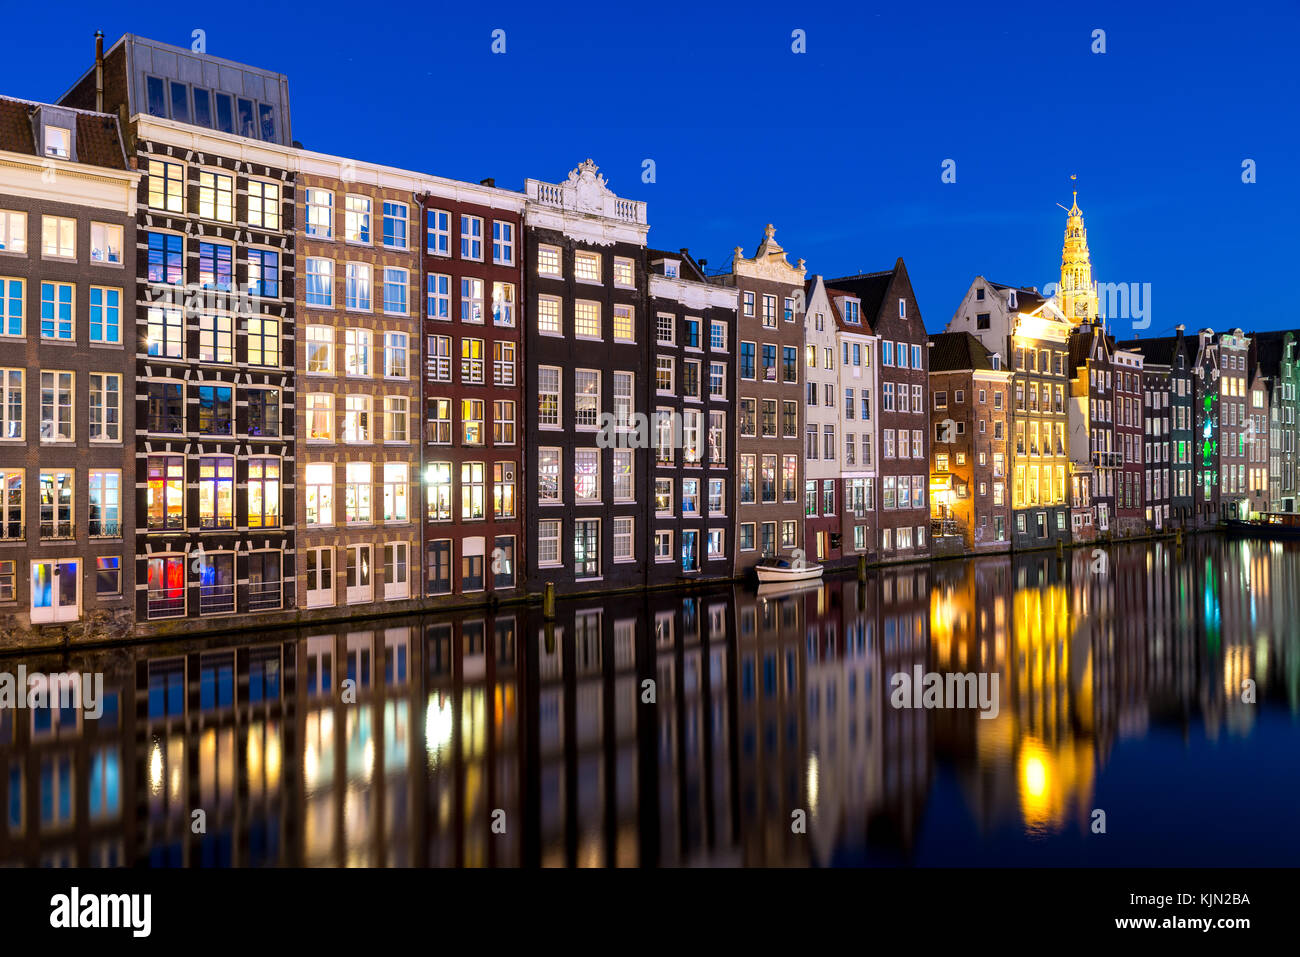 Kanäle und Tradition Haus in Amsterdam bei Nacht. Amsterdam ist die Hauptstadt und die bevölkerungsreichste Stadt der Niederlande. Stockfoto